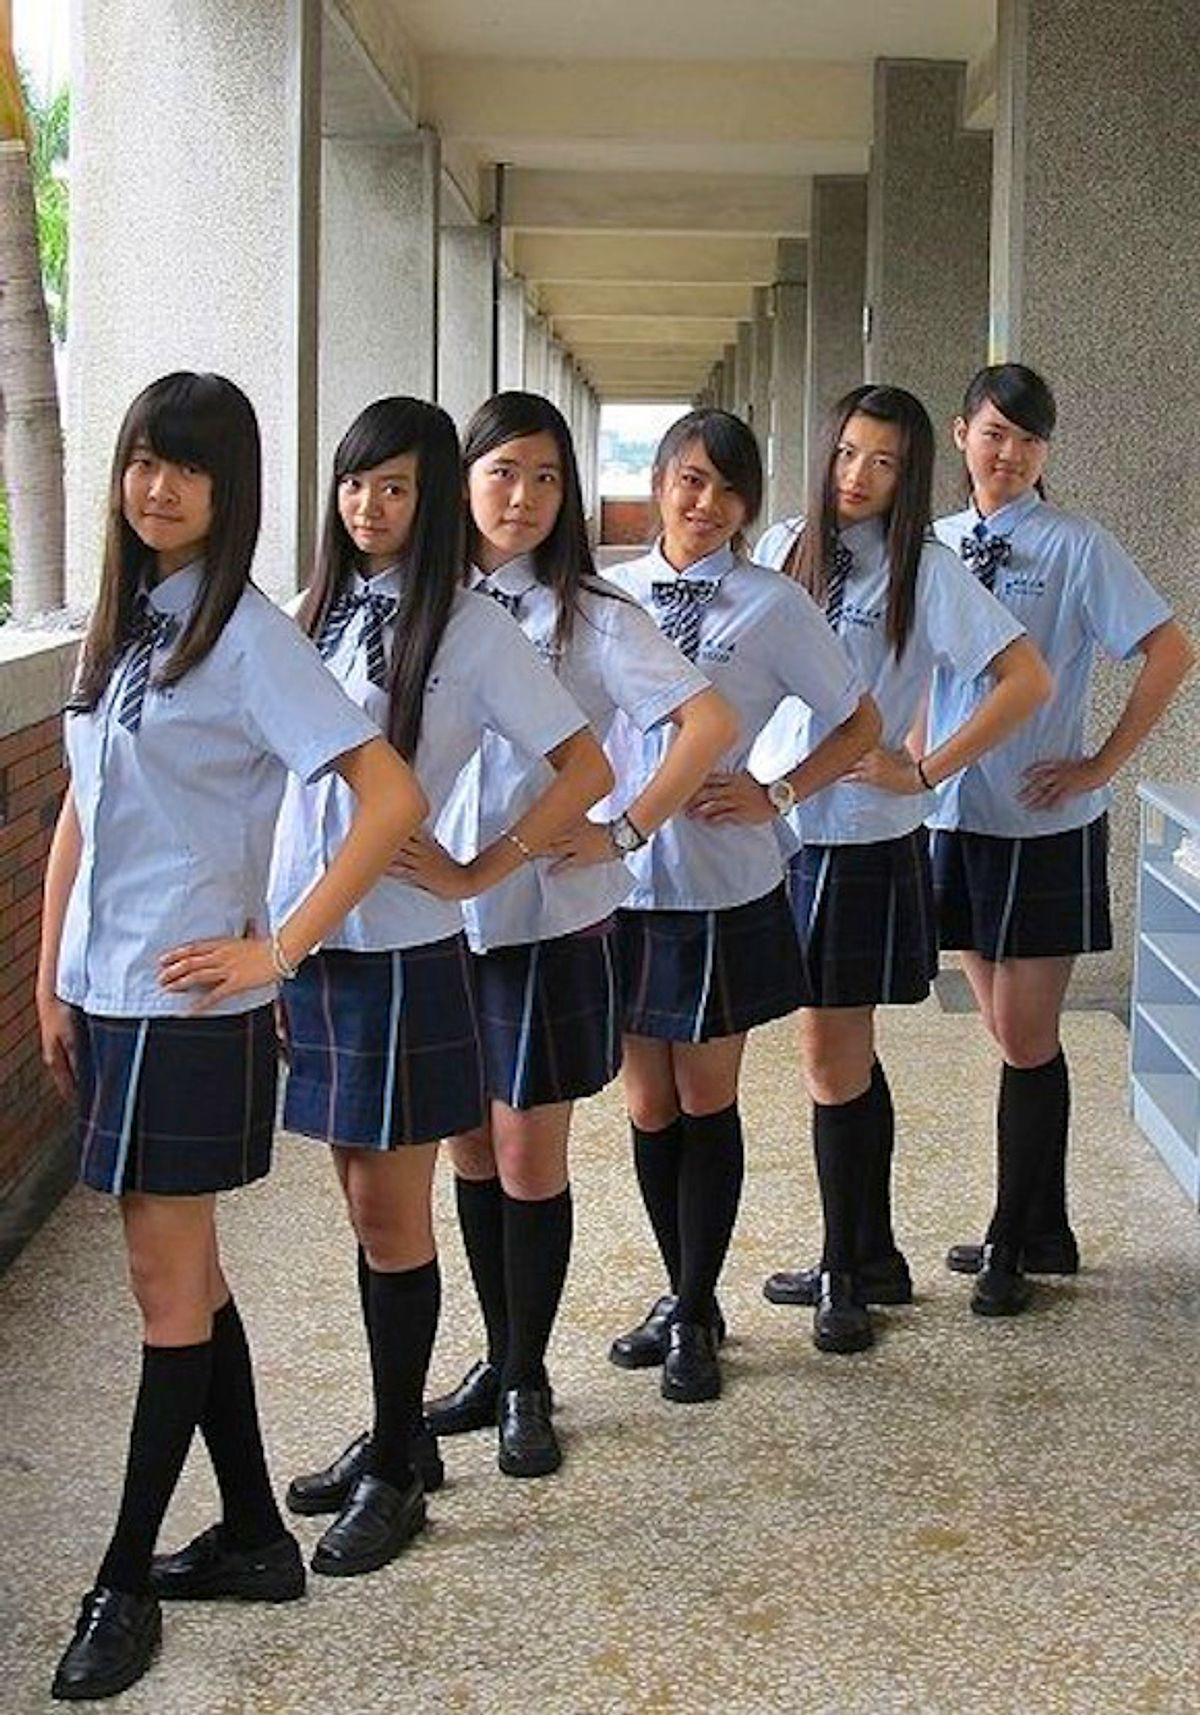 Schoolgirls forum